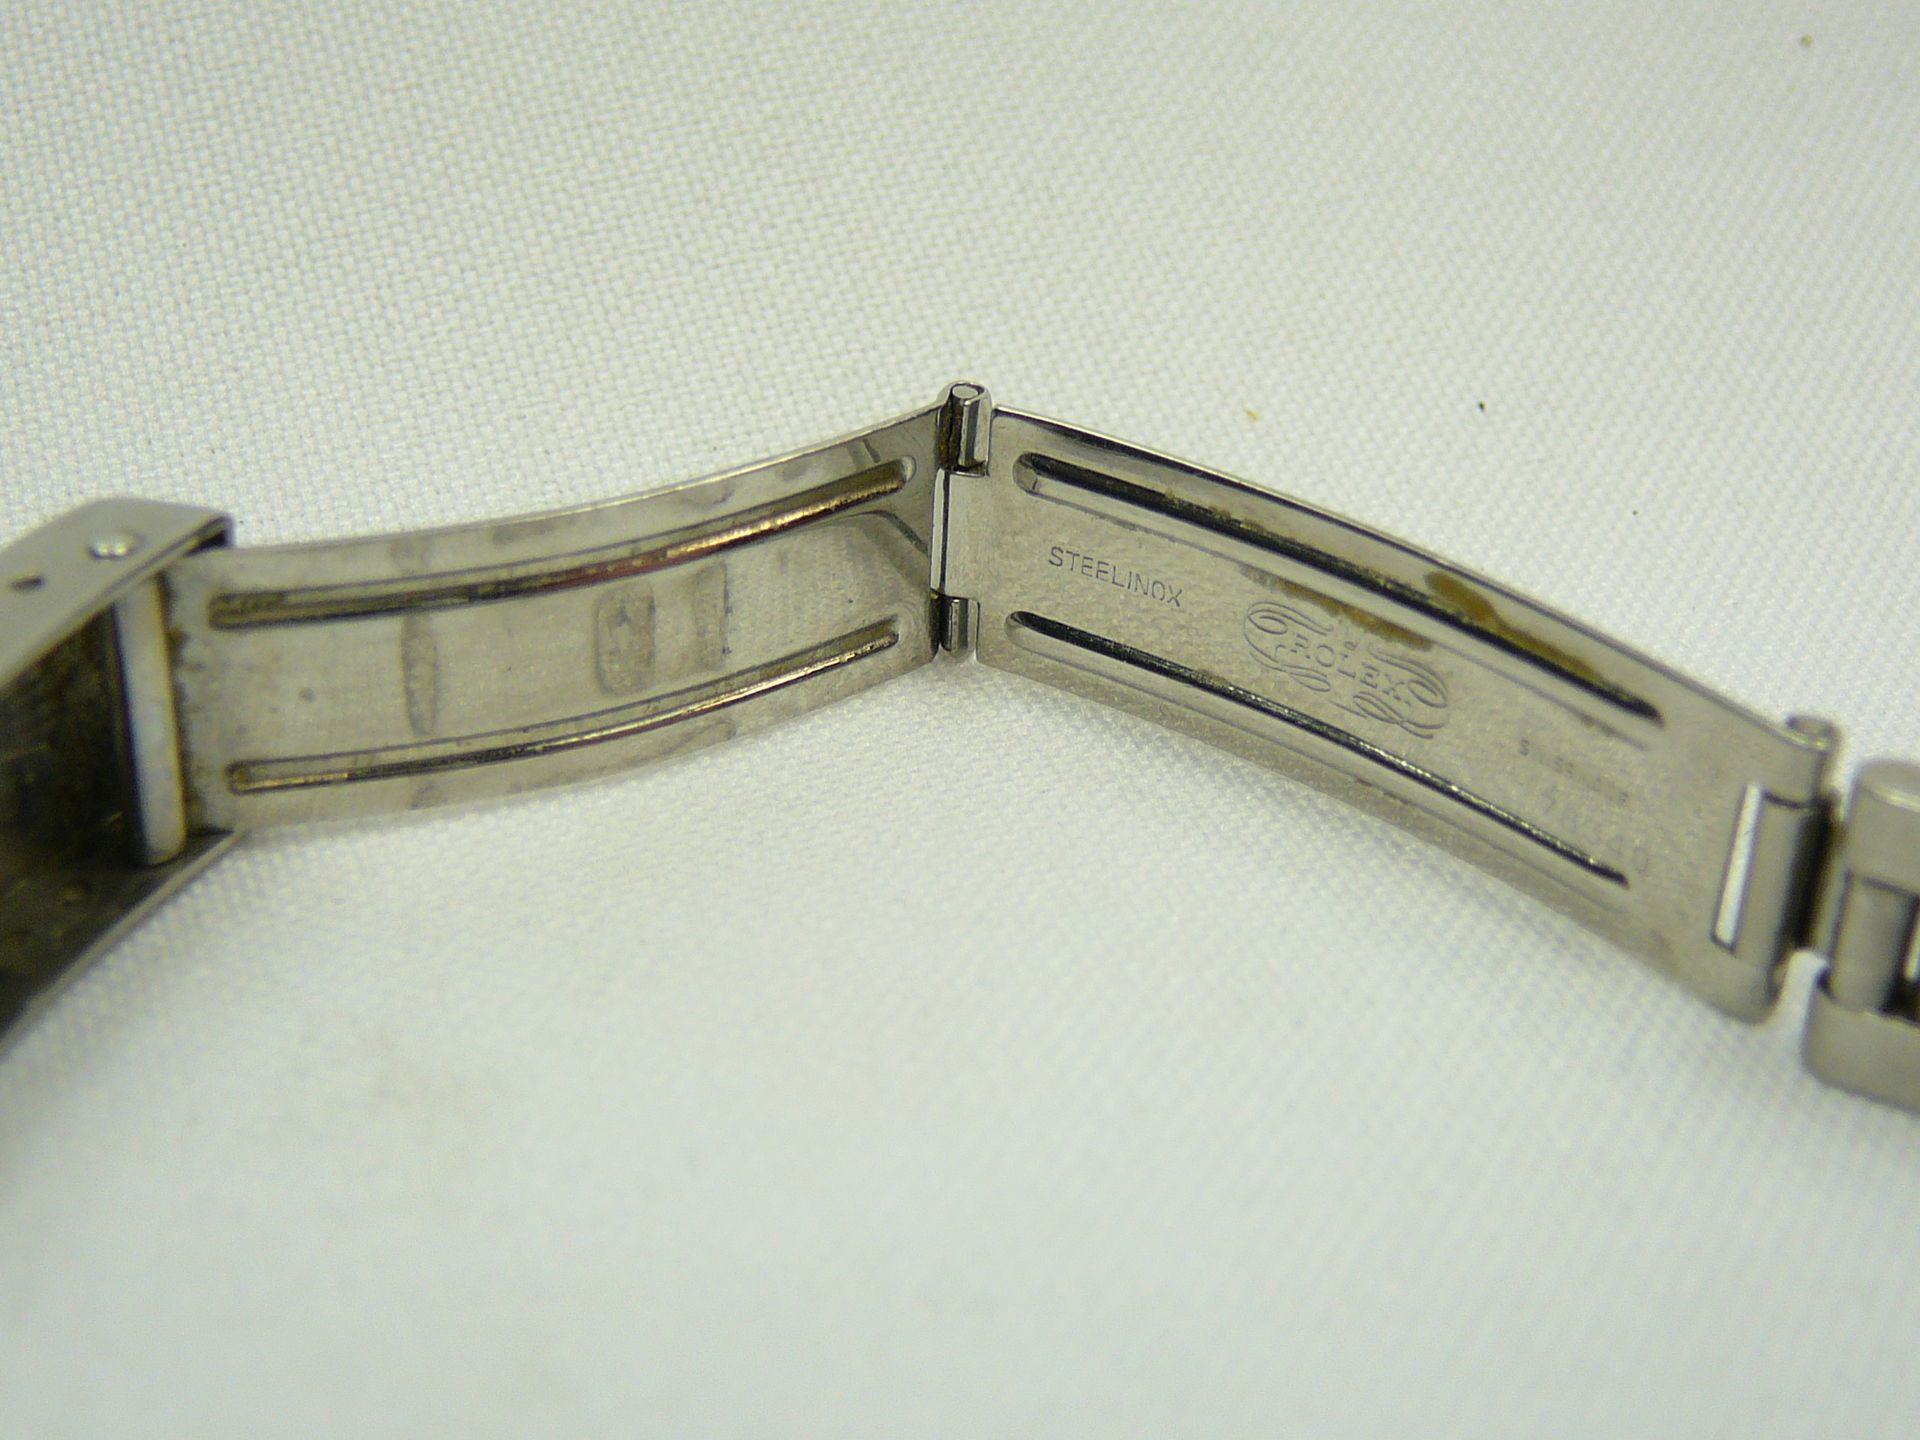 Ladies Vintage Rolex Wrist Watch - Image 7 of 7